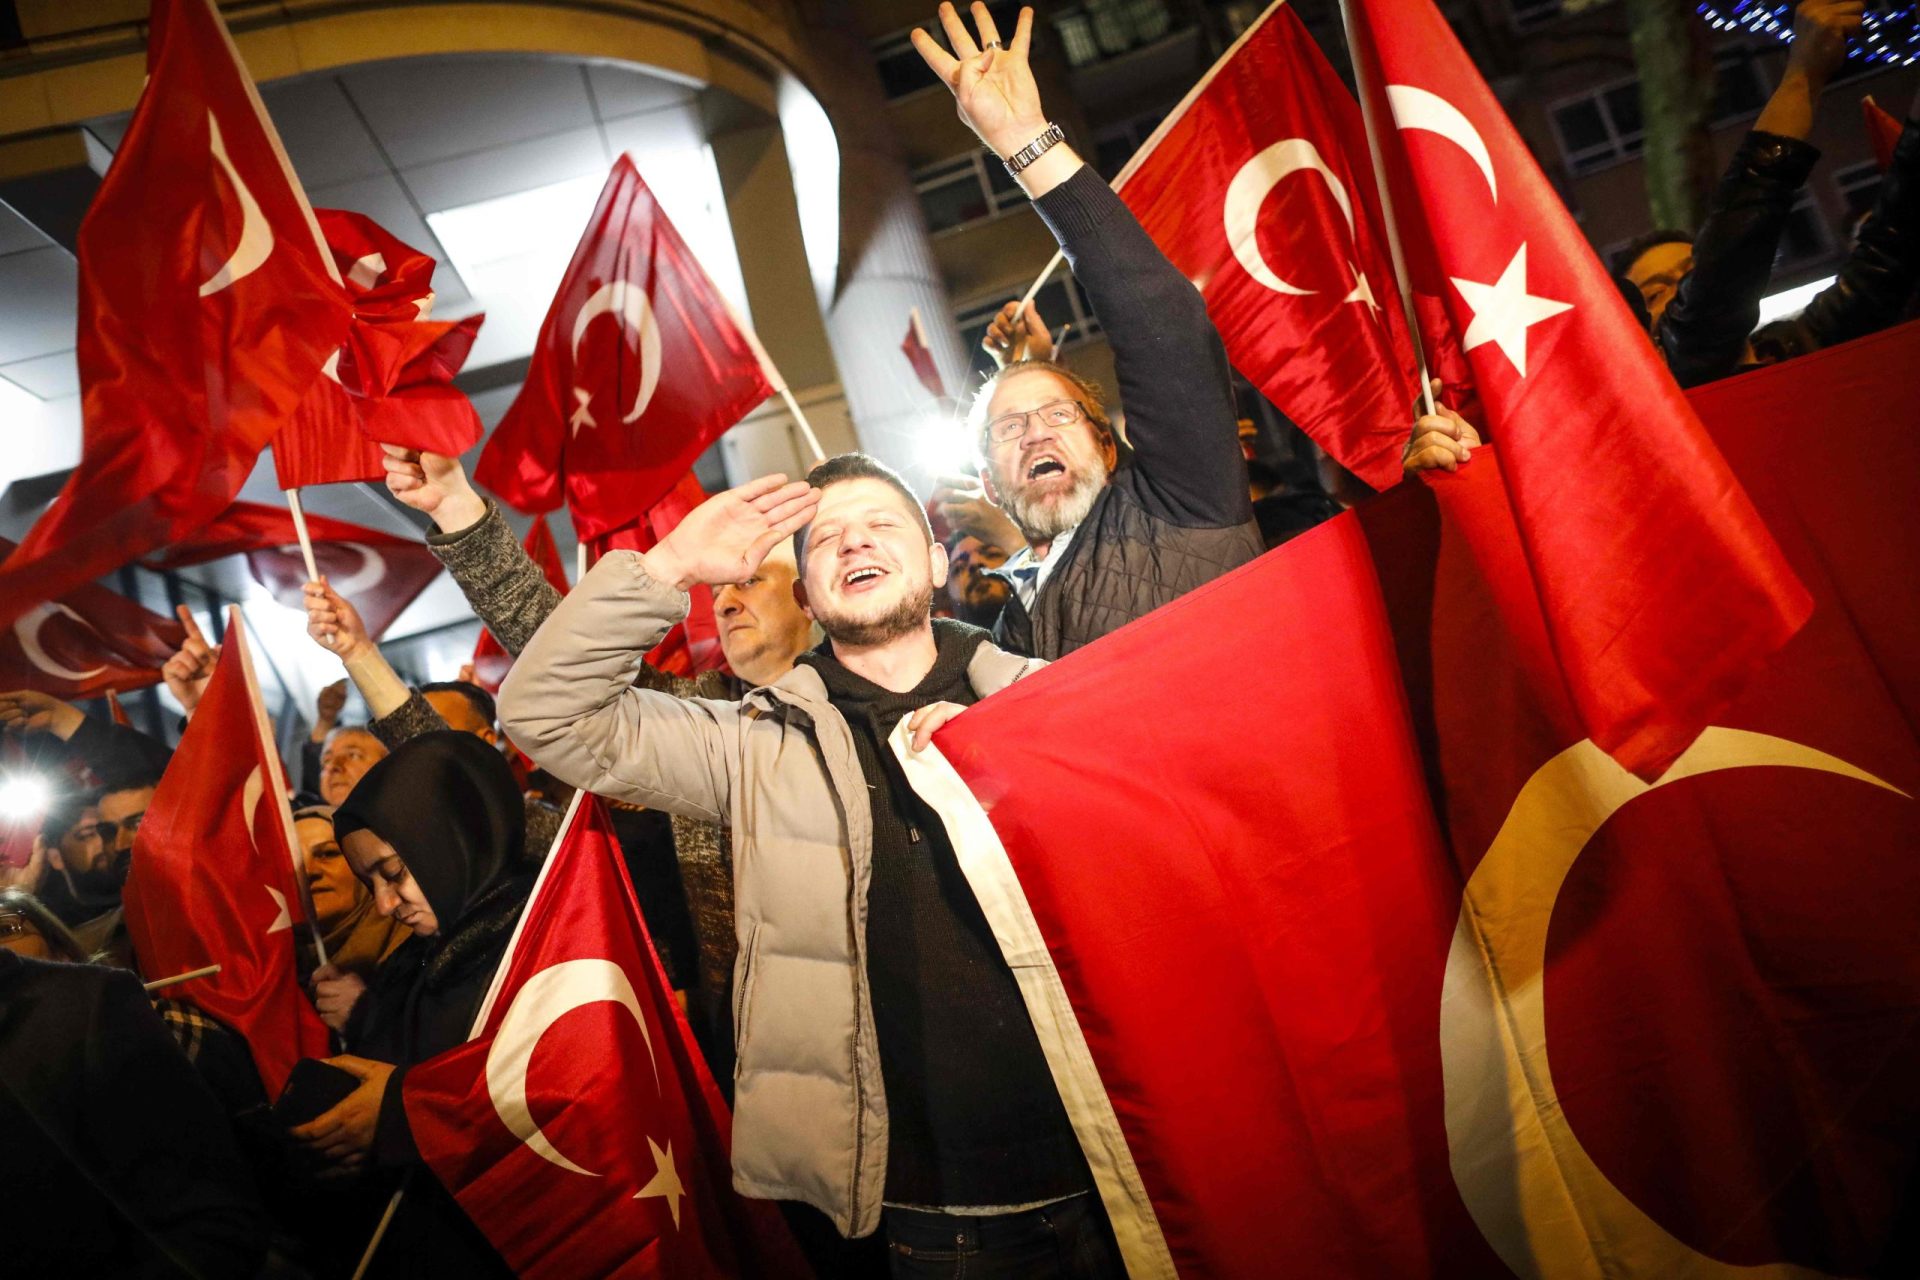 Holanda. Confrontos e crise diplomática alargam fosso entre europeus e turcos